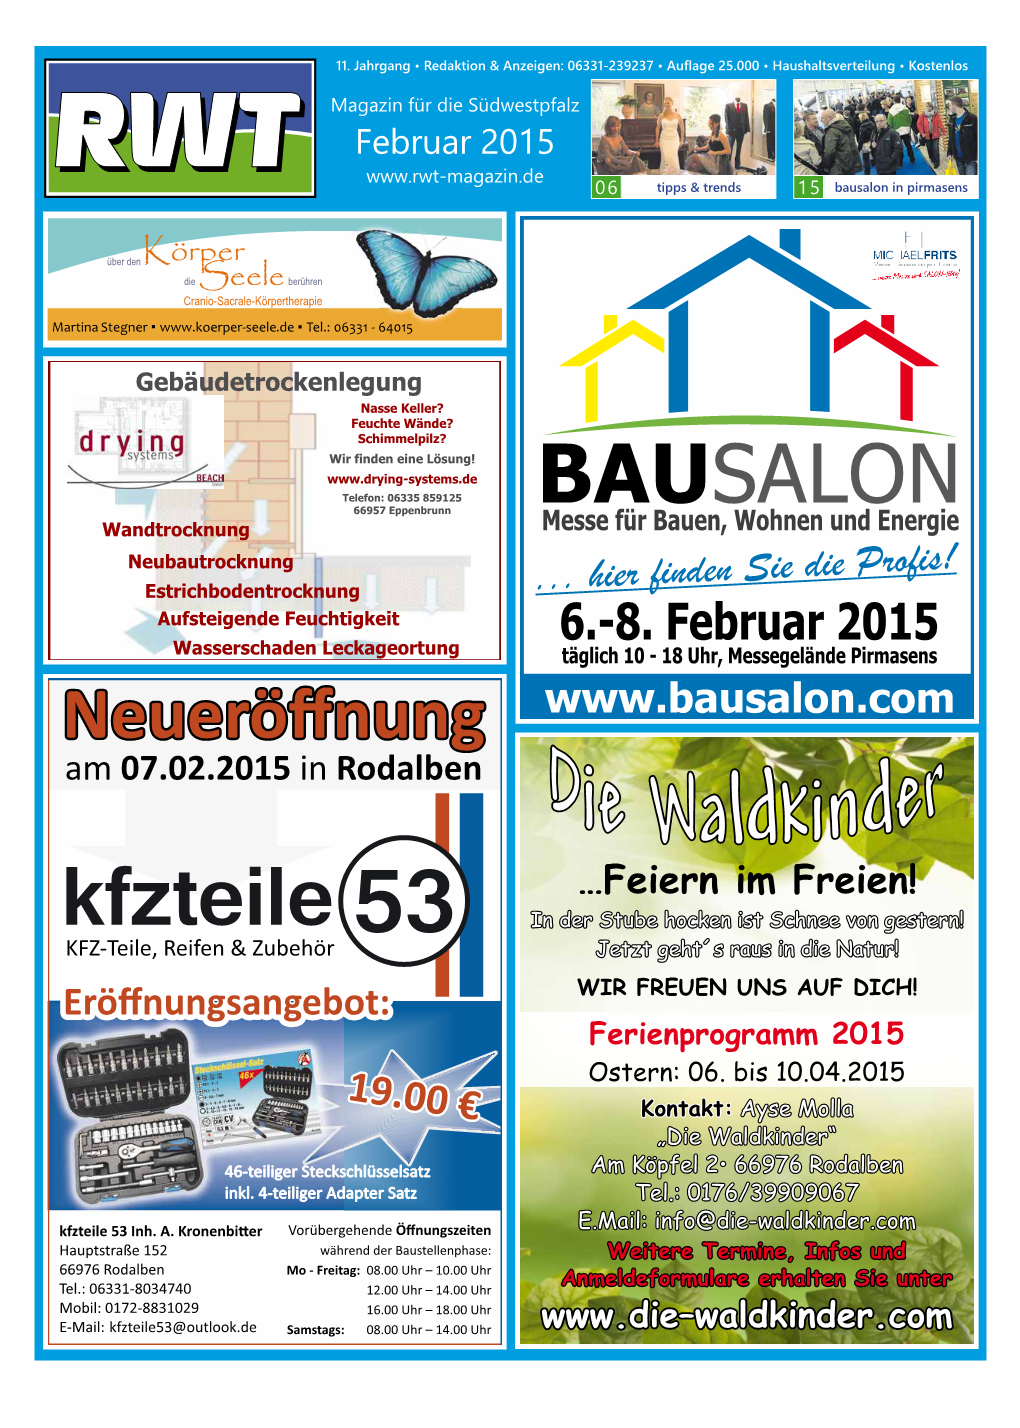 Februar 2015 06 Tipps & Trends 15 Bausalon in Pirmasens